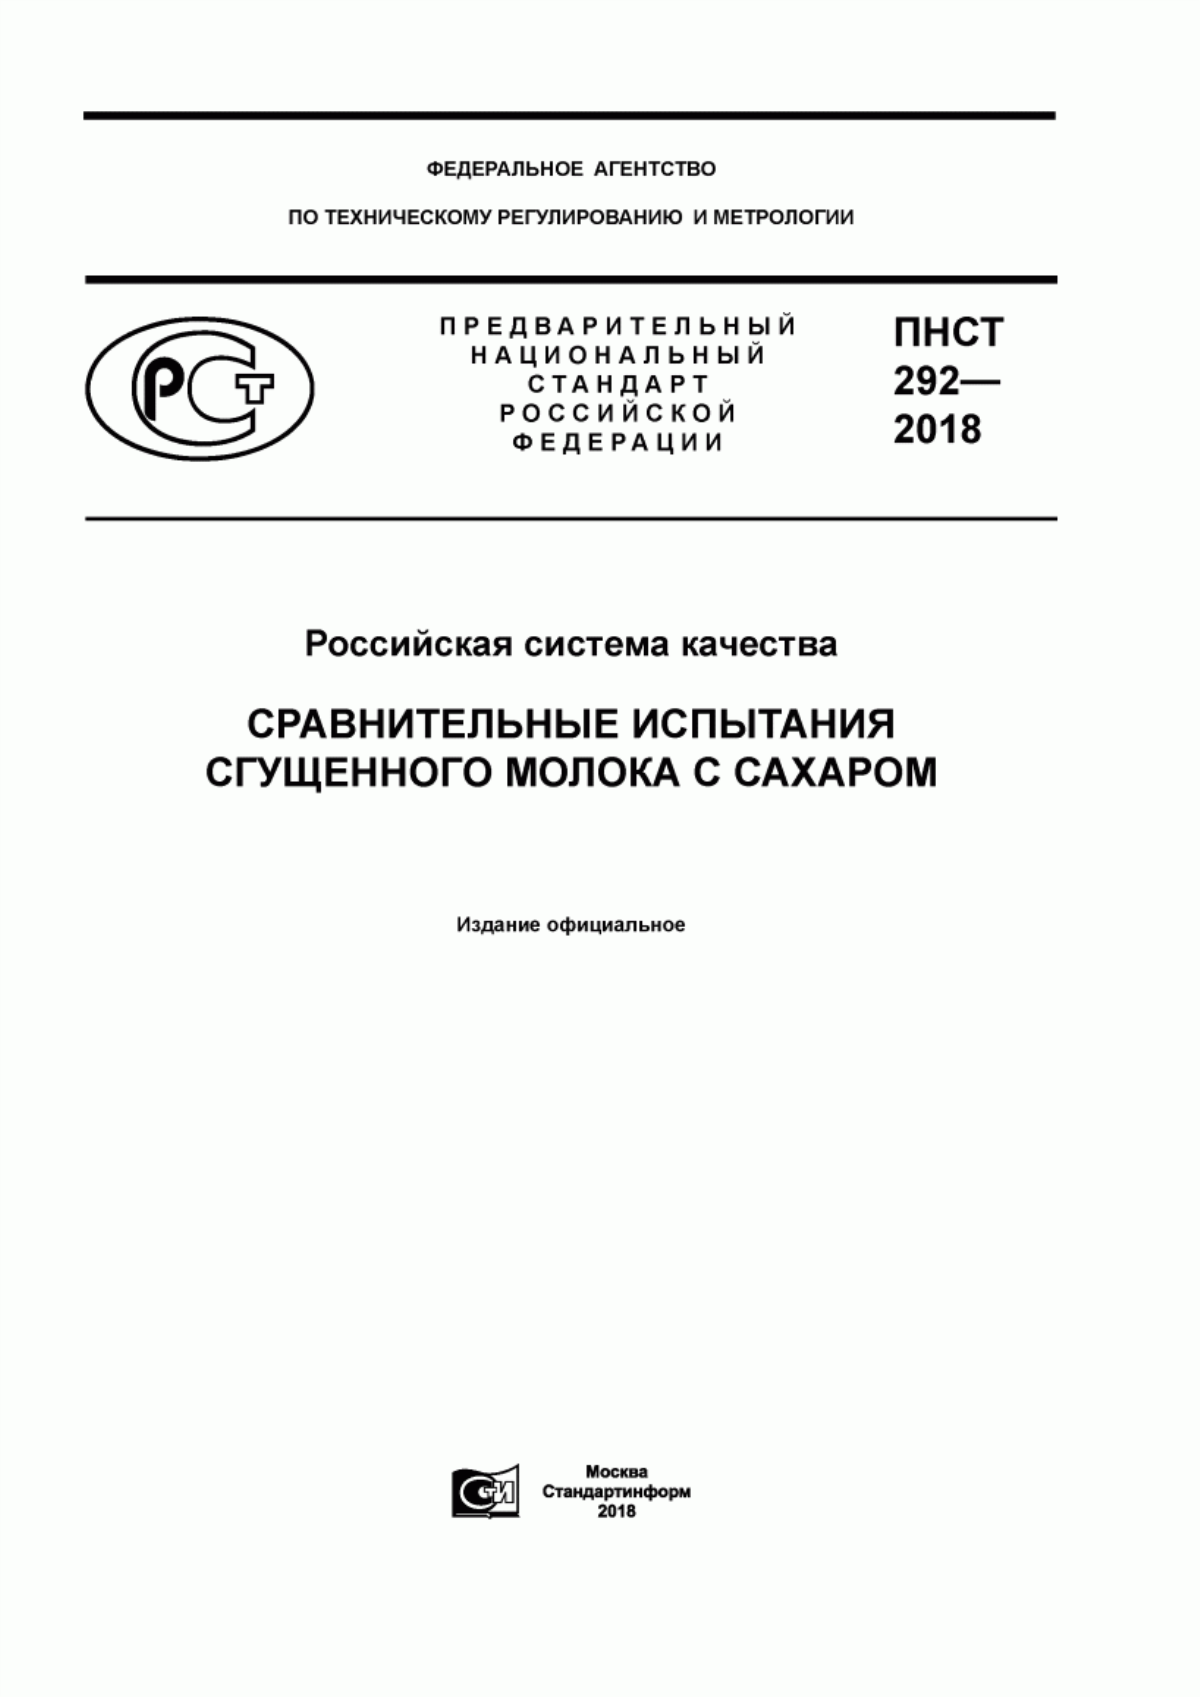 ПНСТ 292-2018 Российская система качества. Сравнительные испытания сгущенного молока с сахаром